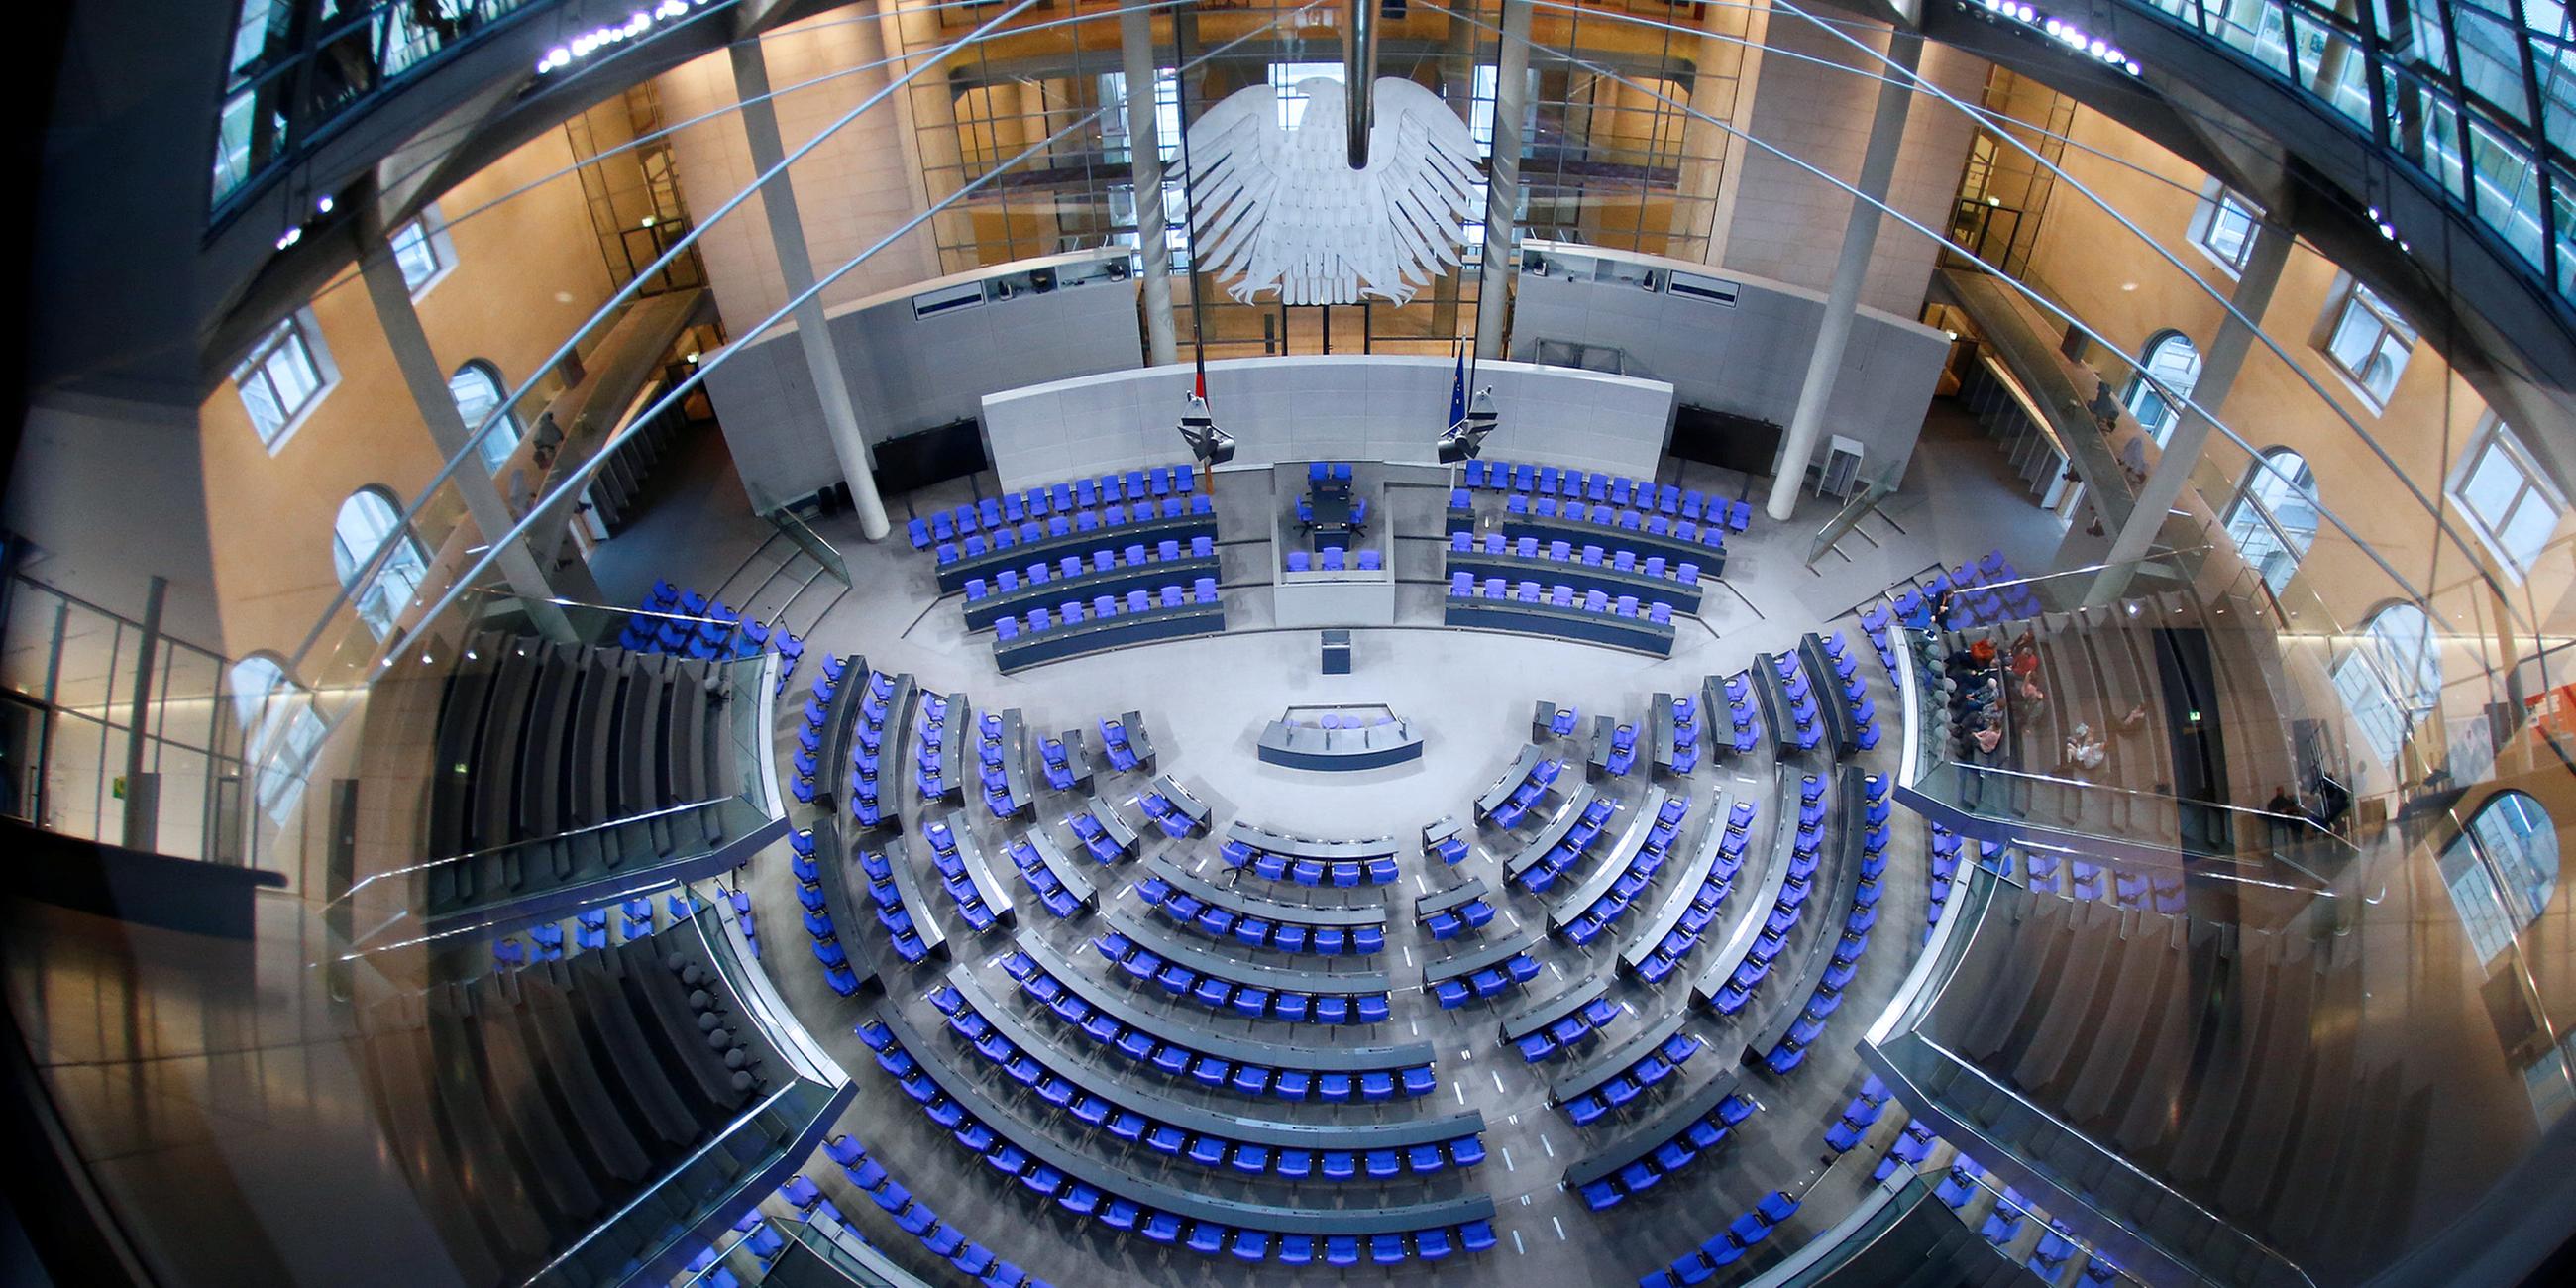 Archiv: Der Plenarsaal des Deutschen Bundestags im Reichstag in Berlin am 12.01.2018